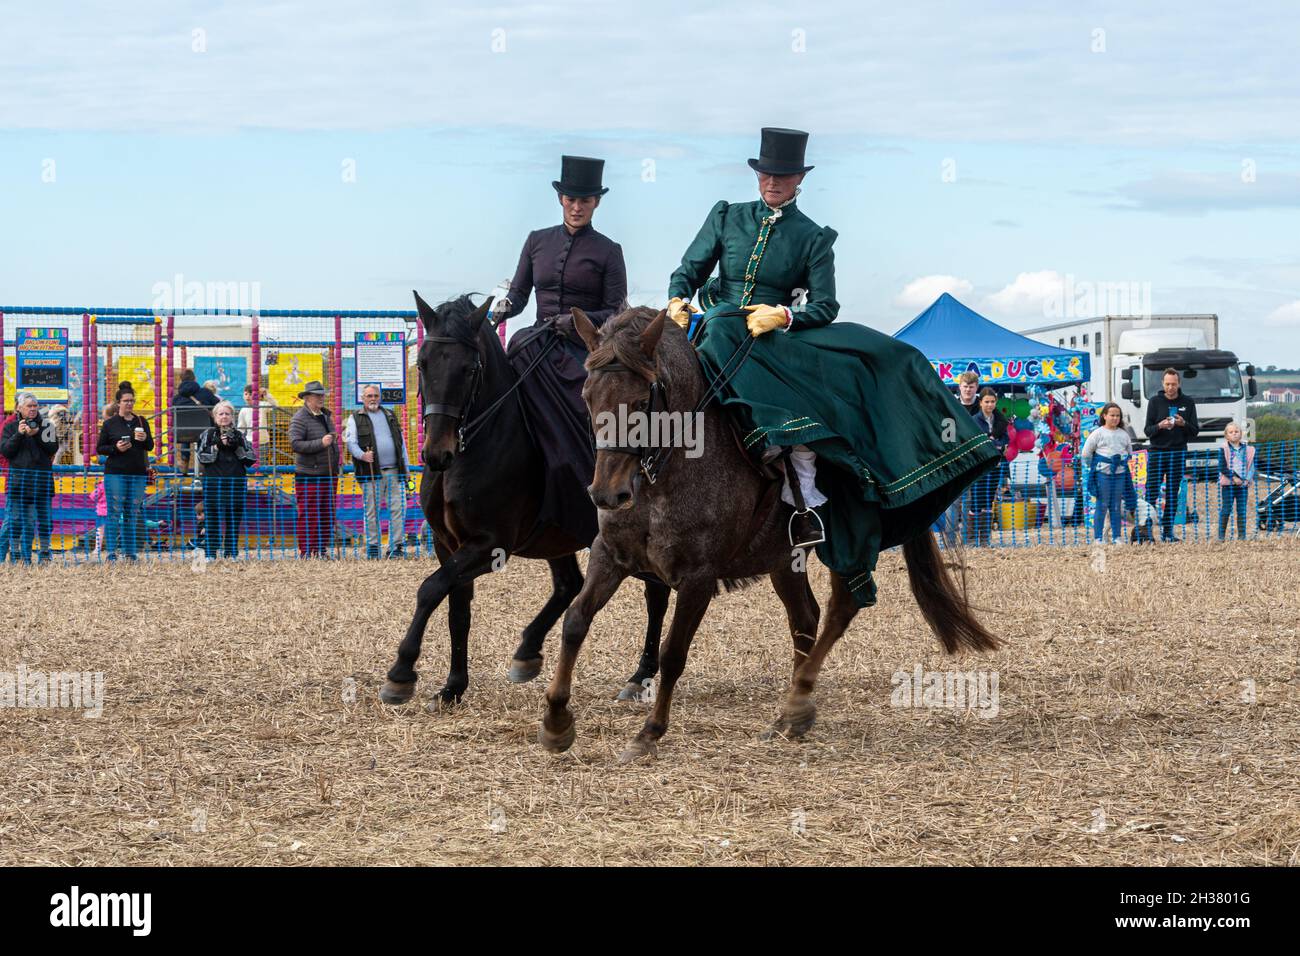 Deux femmes en costume d'époque faisant une exposition d'équitation latérale à cheval lors d'un événement équestre, Royaume-Uni Banque D'Images